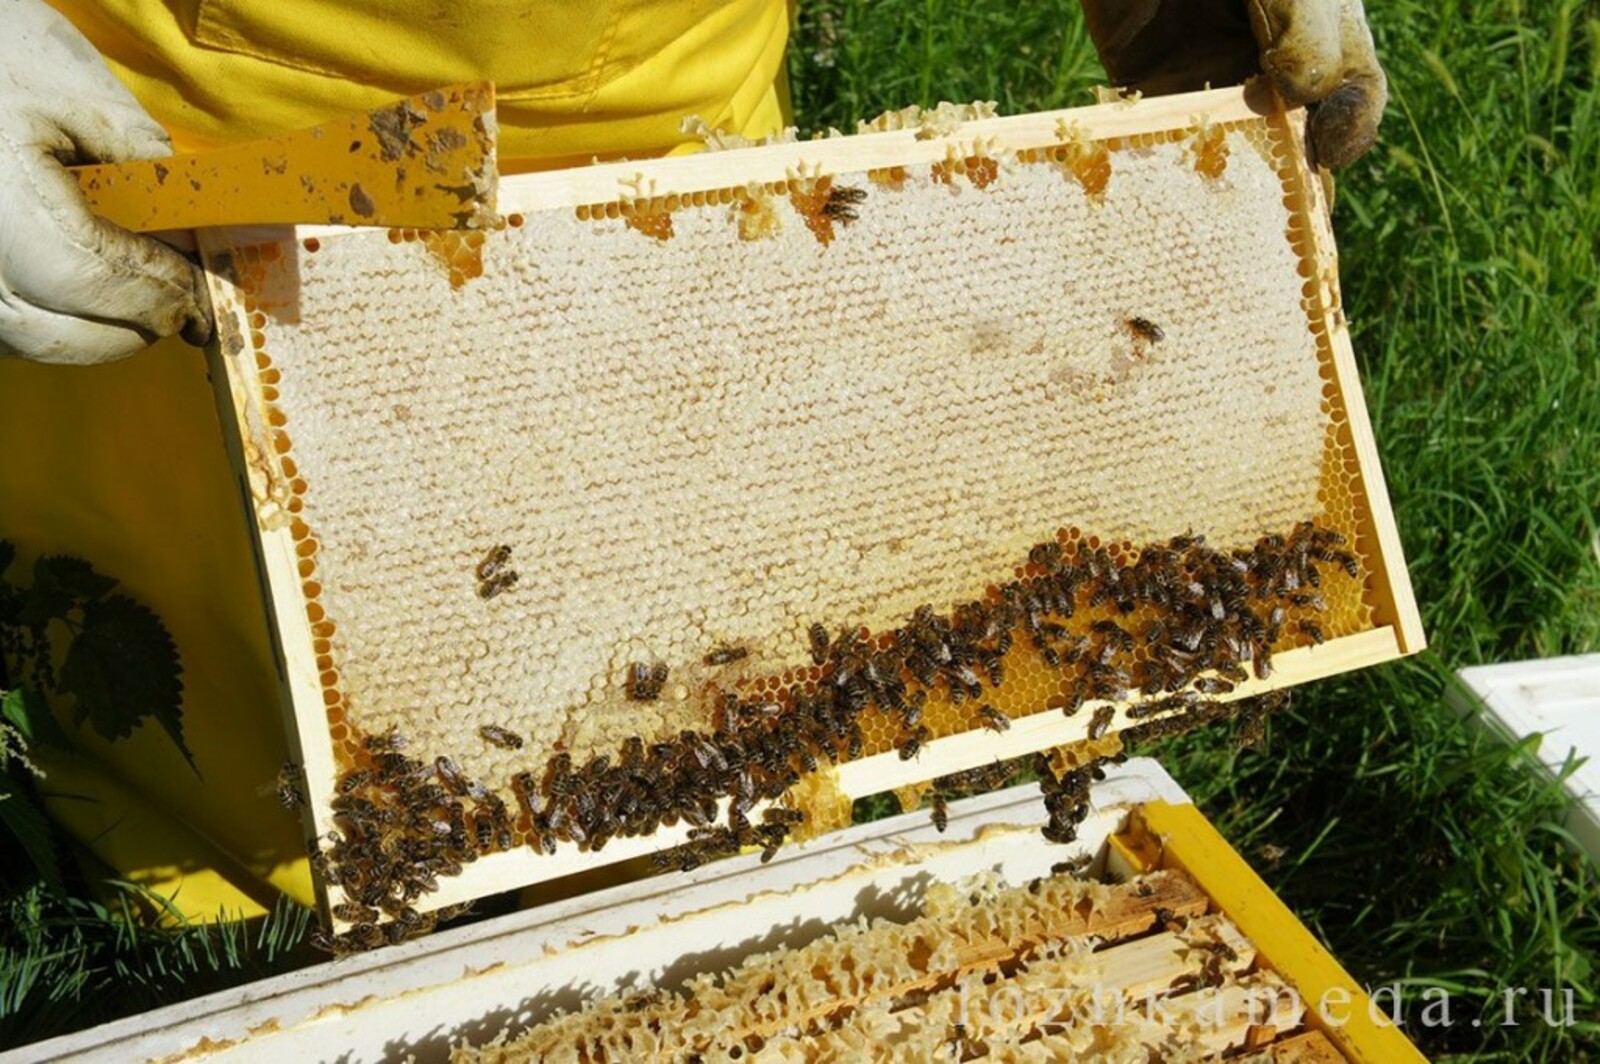 Купить пчел в белгородской. Улей на пасеке. Пчела на сотах. Пчелы в улье. Рамки с сотами для ульев.